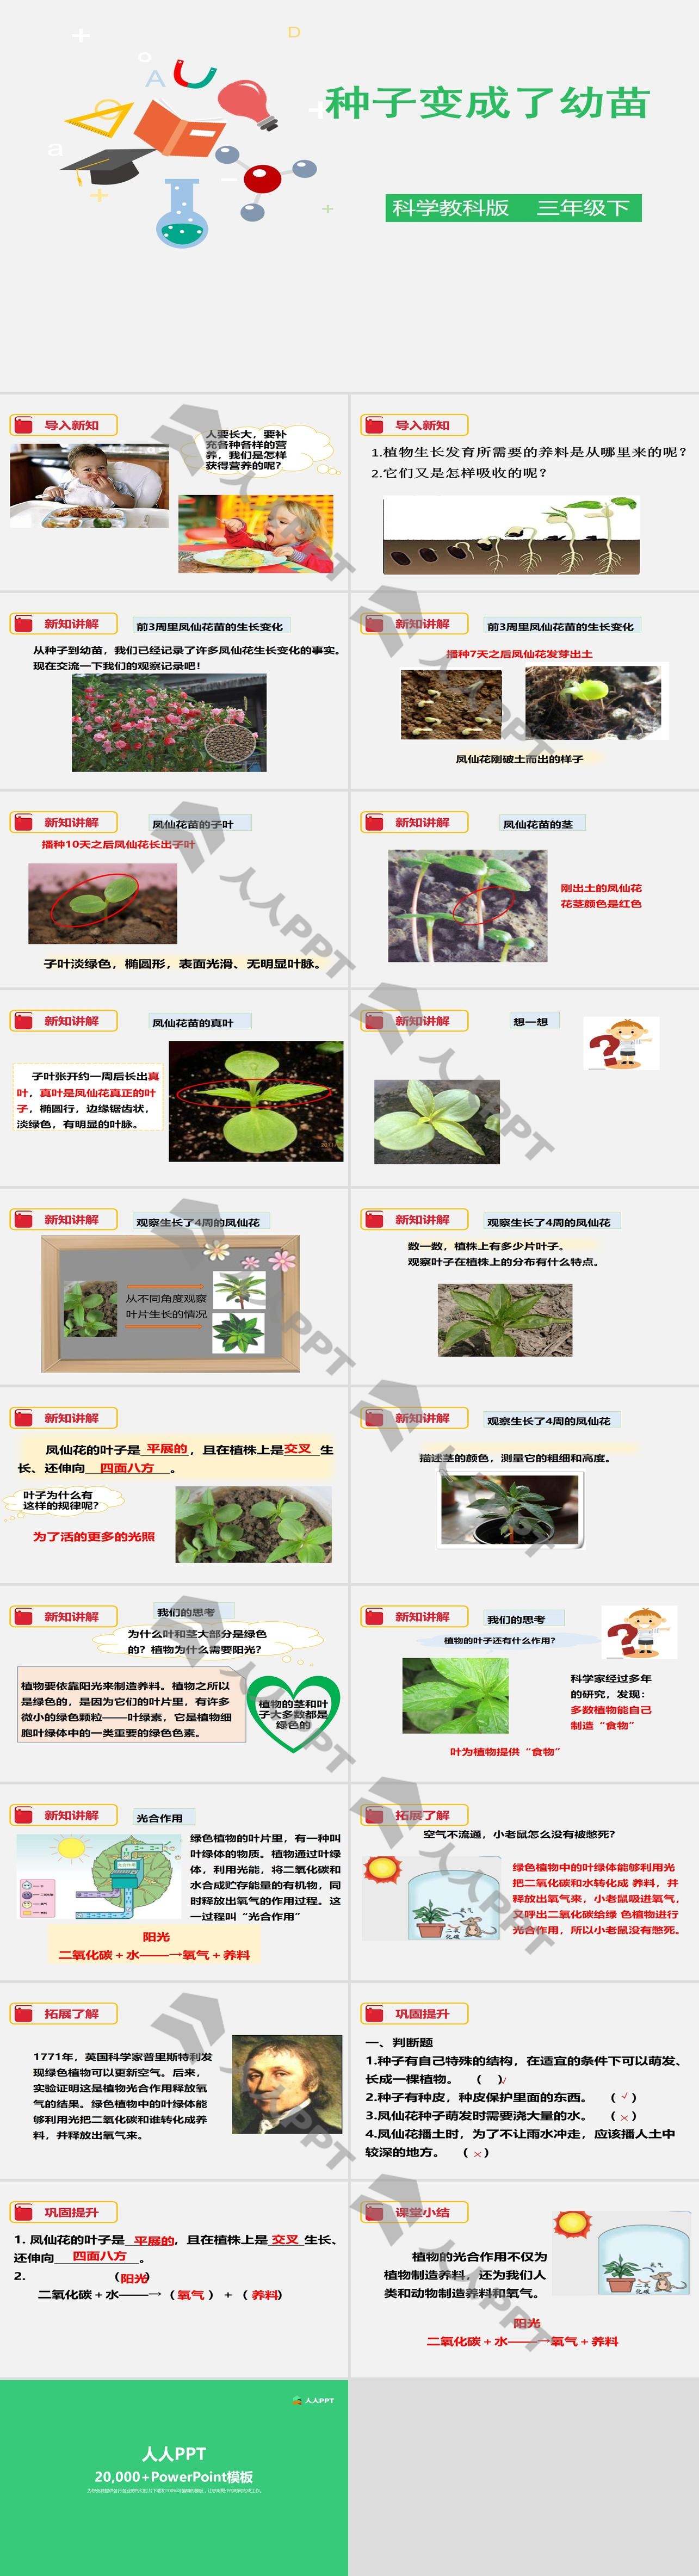 《种子变成了幼苗》植物的生长变化PPT下载长图